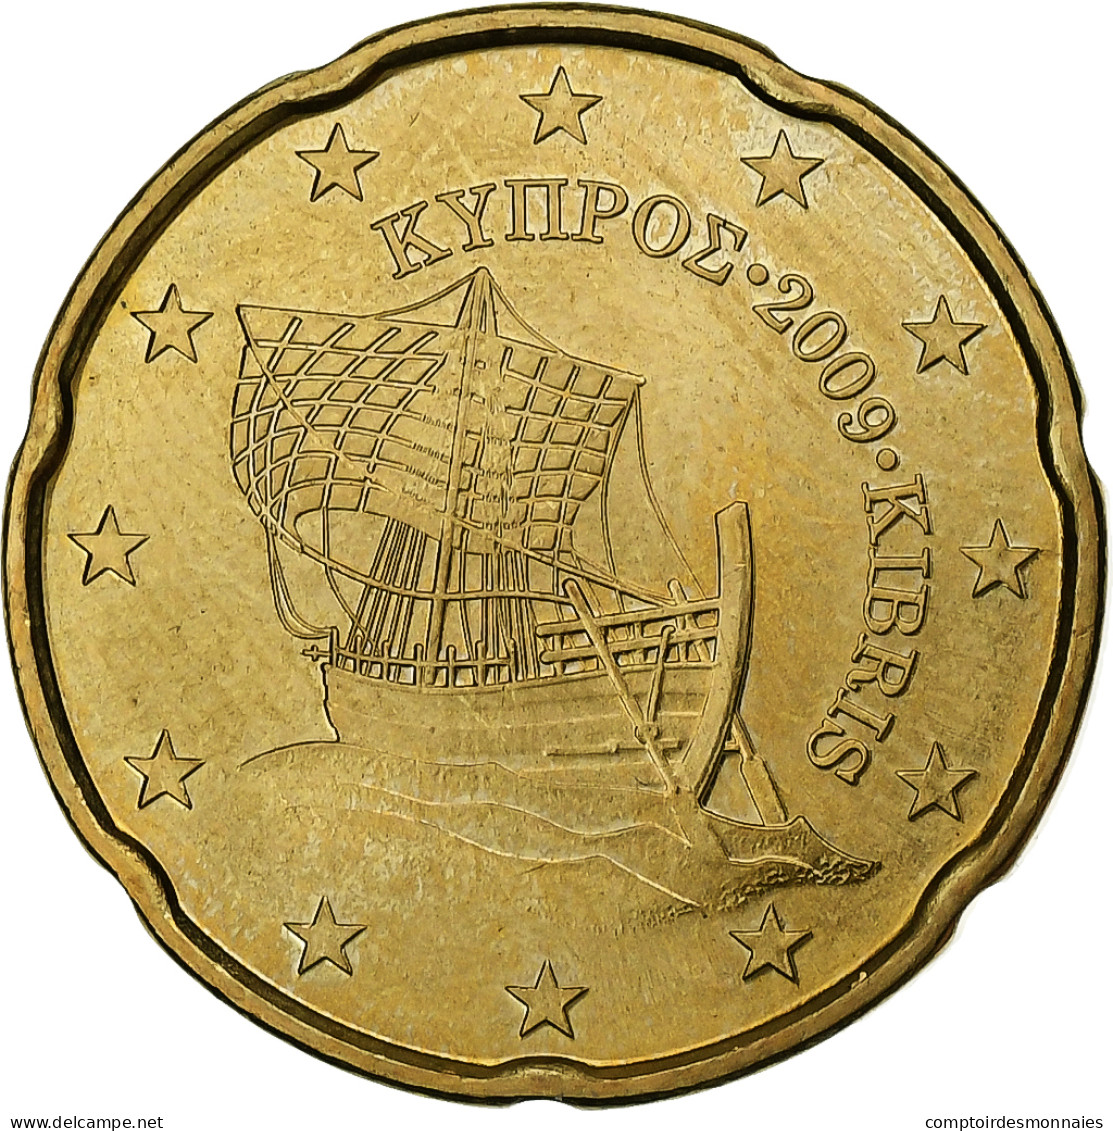 Chypre, 20 Euro Cent, 2009, SUP, Laiton, KM:82 - Zypern